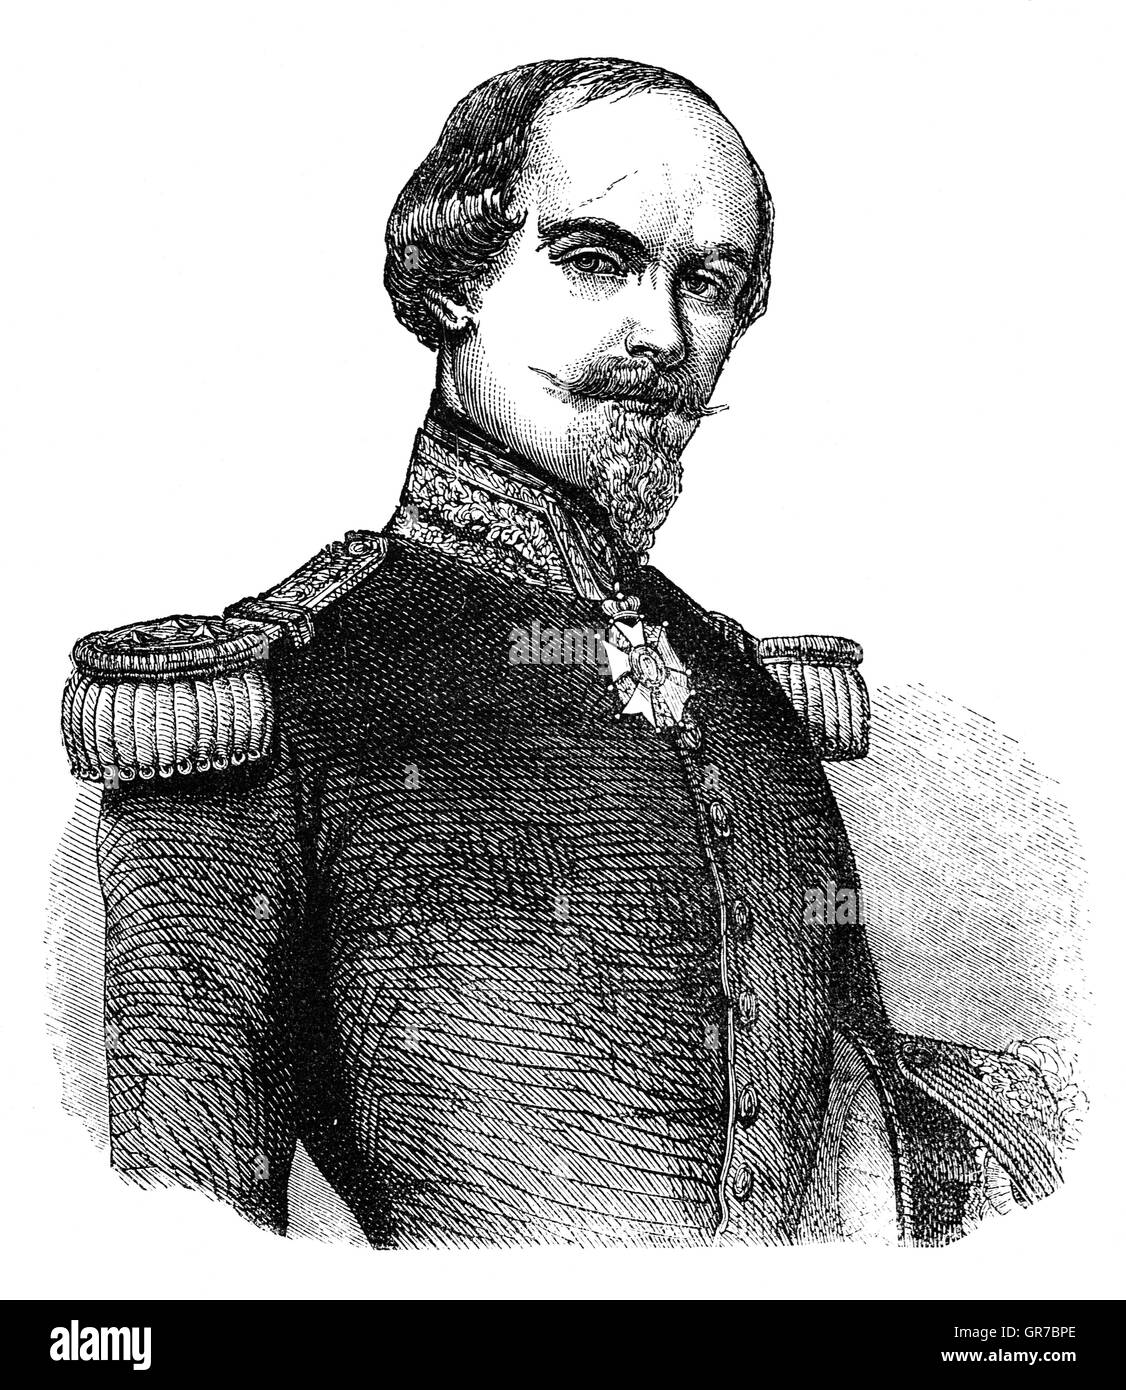 François Certain de Canrobert, normalerweise bekannt als François Certain-Canrobert und später einfach als Maréchal Canrobert (27. Juni 1809 – 28. Januar 1895), war ein Marschall von Frankreich. Im Krimkrieg kommandierte er eine Division bei der Schlacht von Alma, wo er zweimal verwundet wurde. Stockfoto